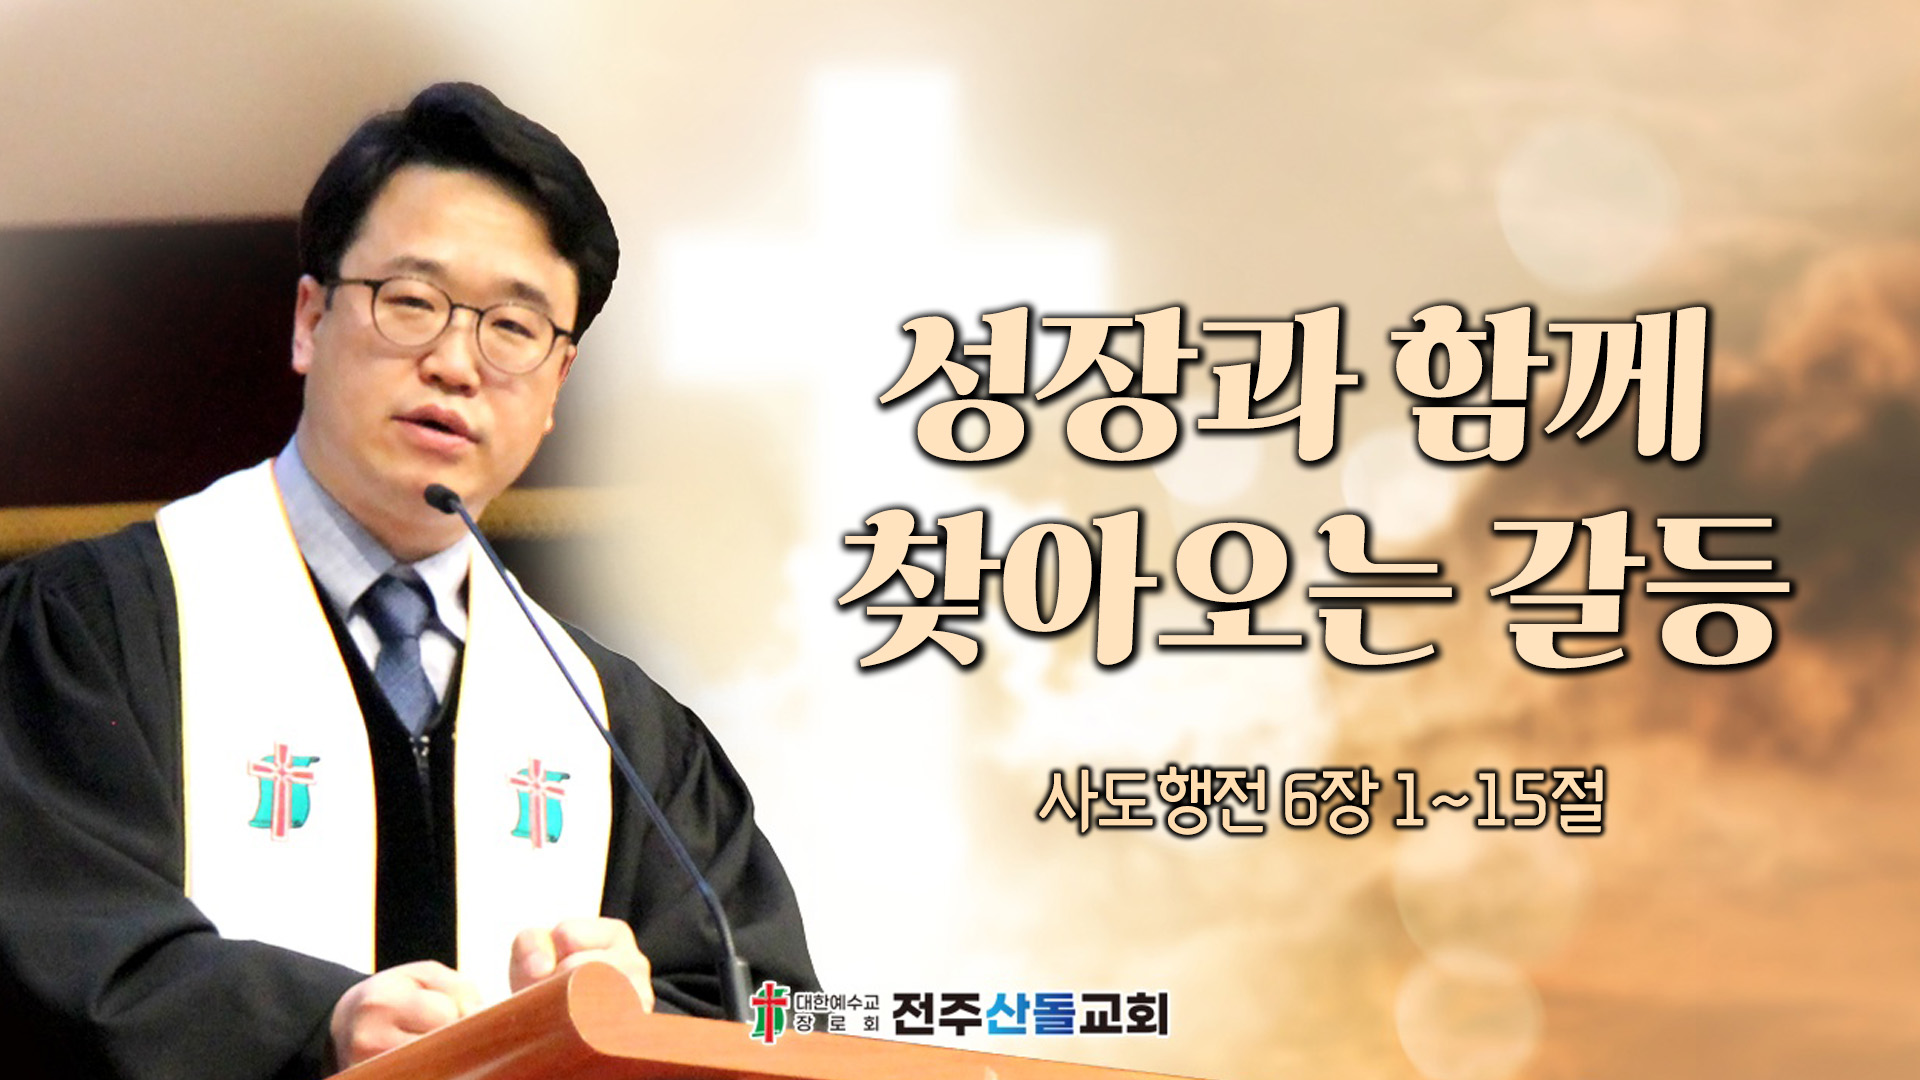 성장과 함께 찾아오는 갈등┃전주산돌교회 김진영 목사	